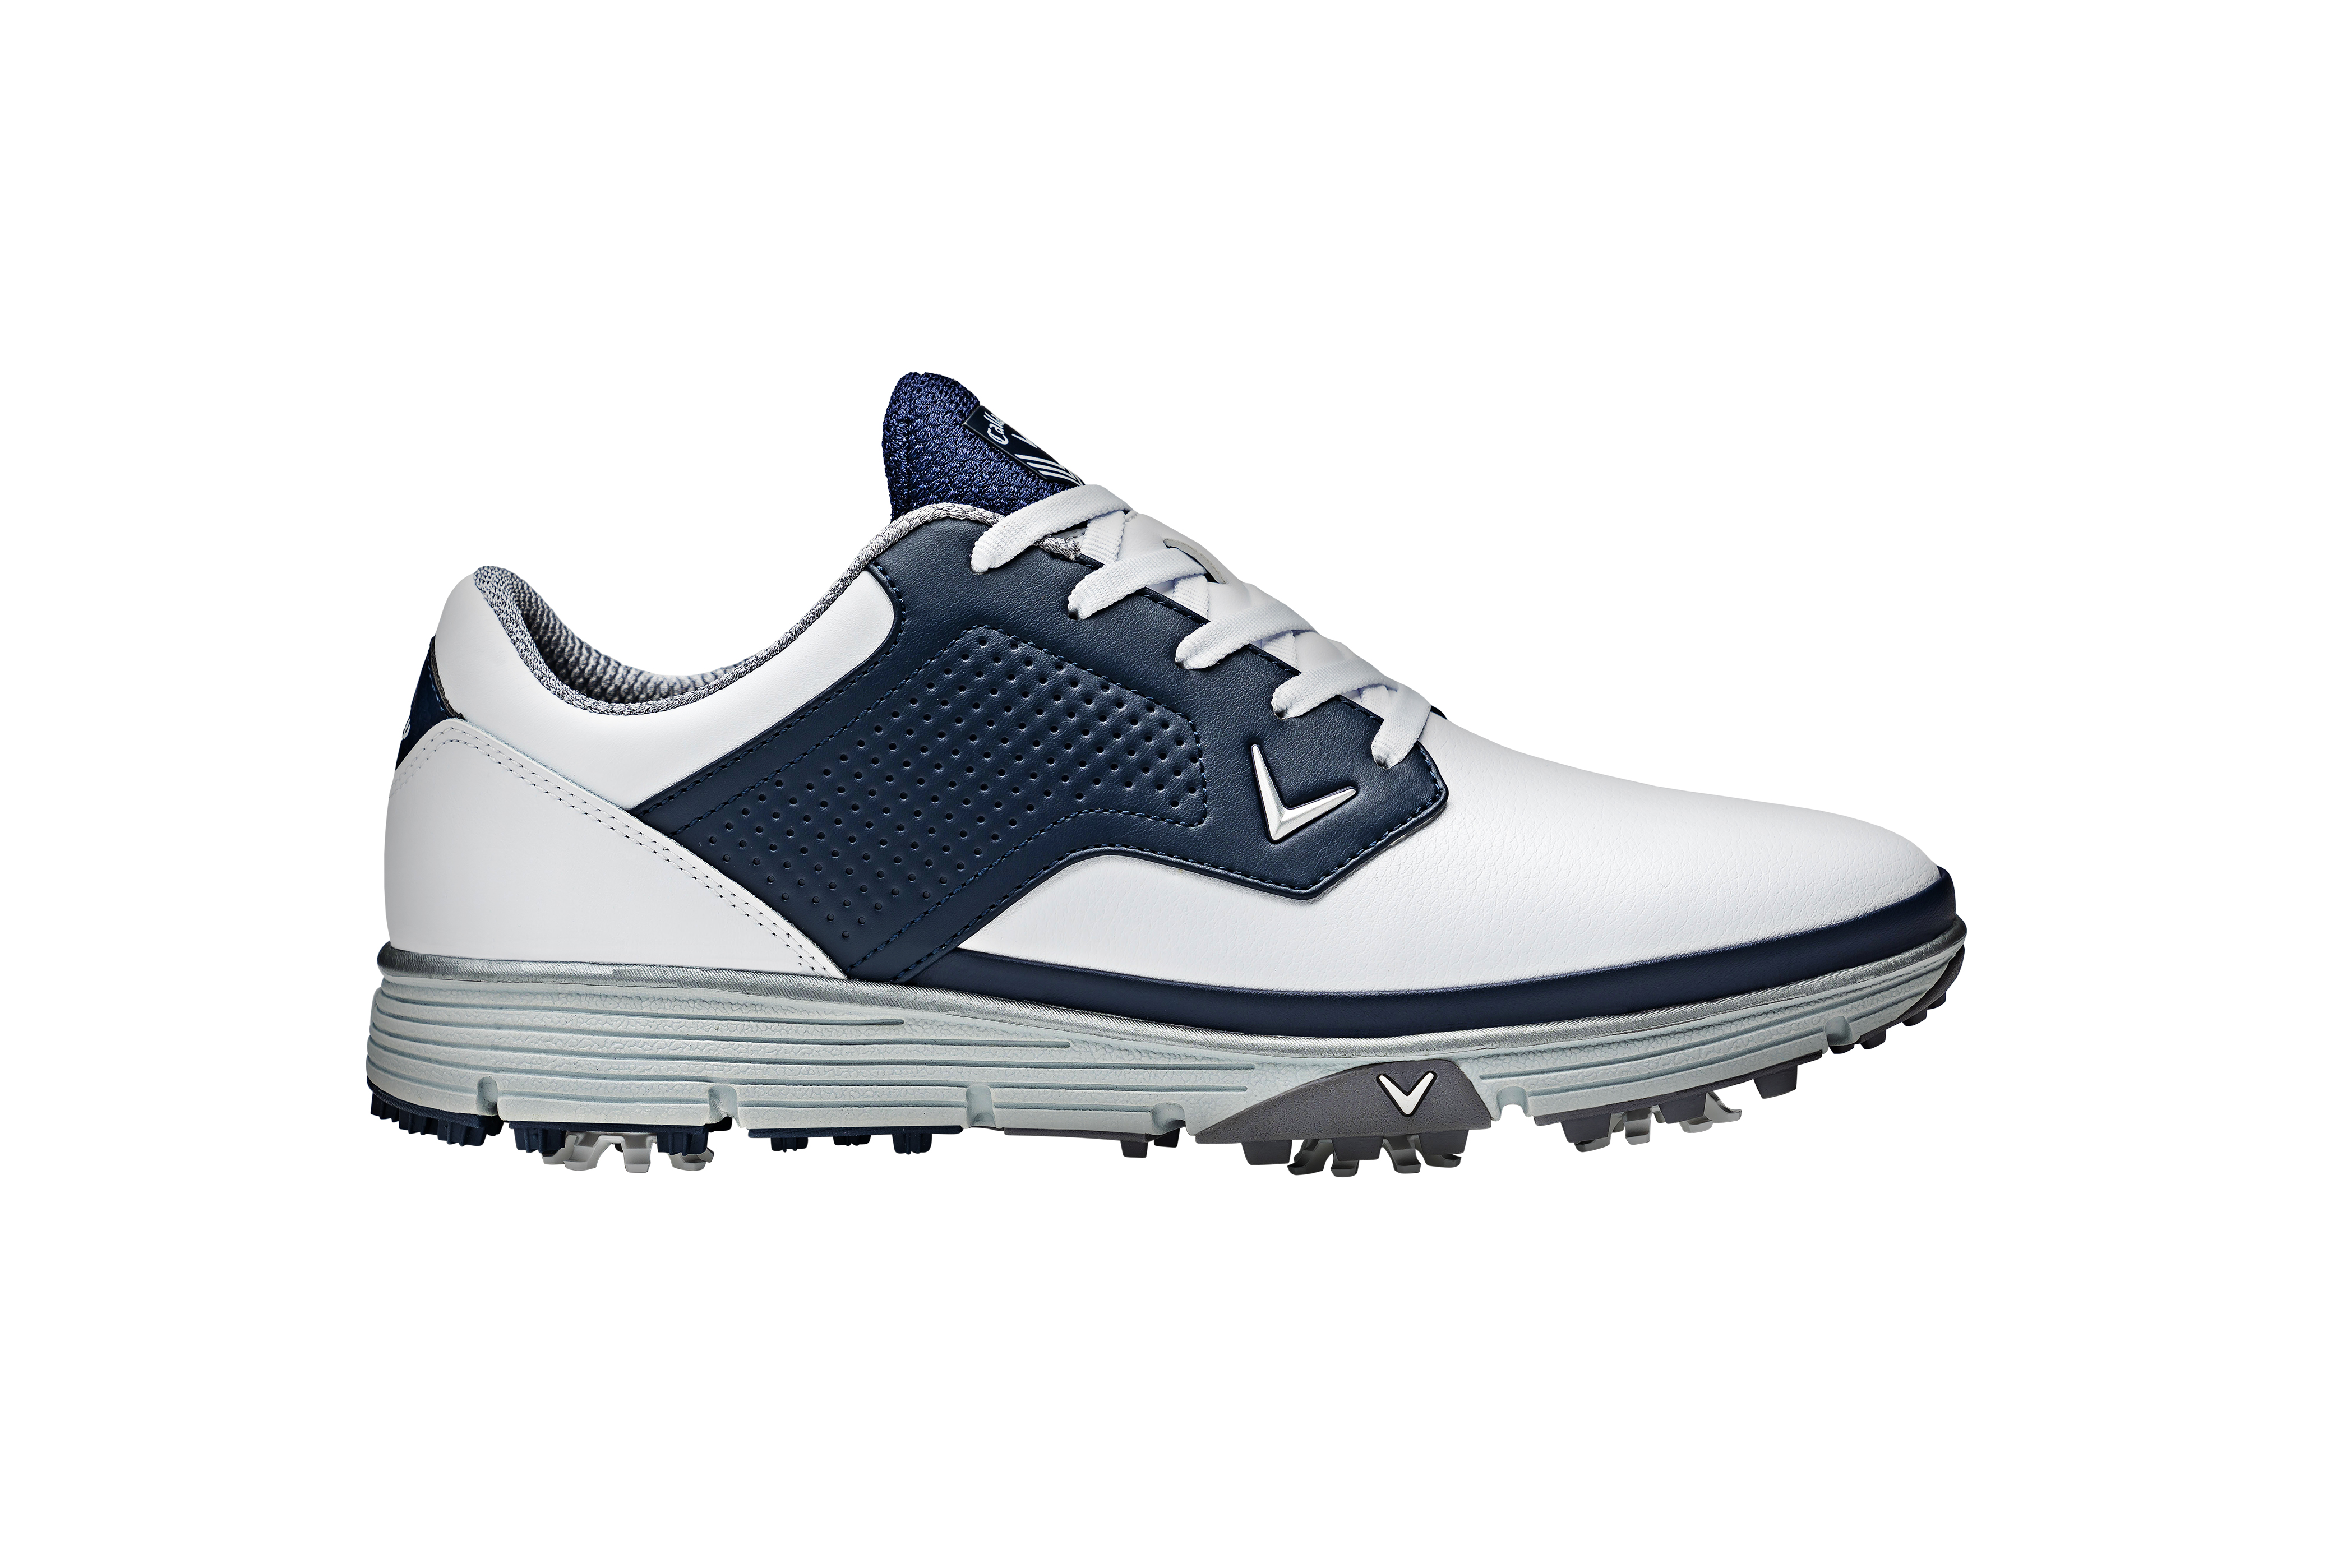 Callaway Mission pánské golfové boty, bílé/tmavě modré, vel. 8 UK